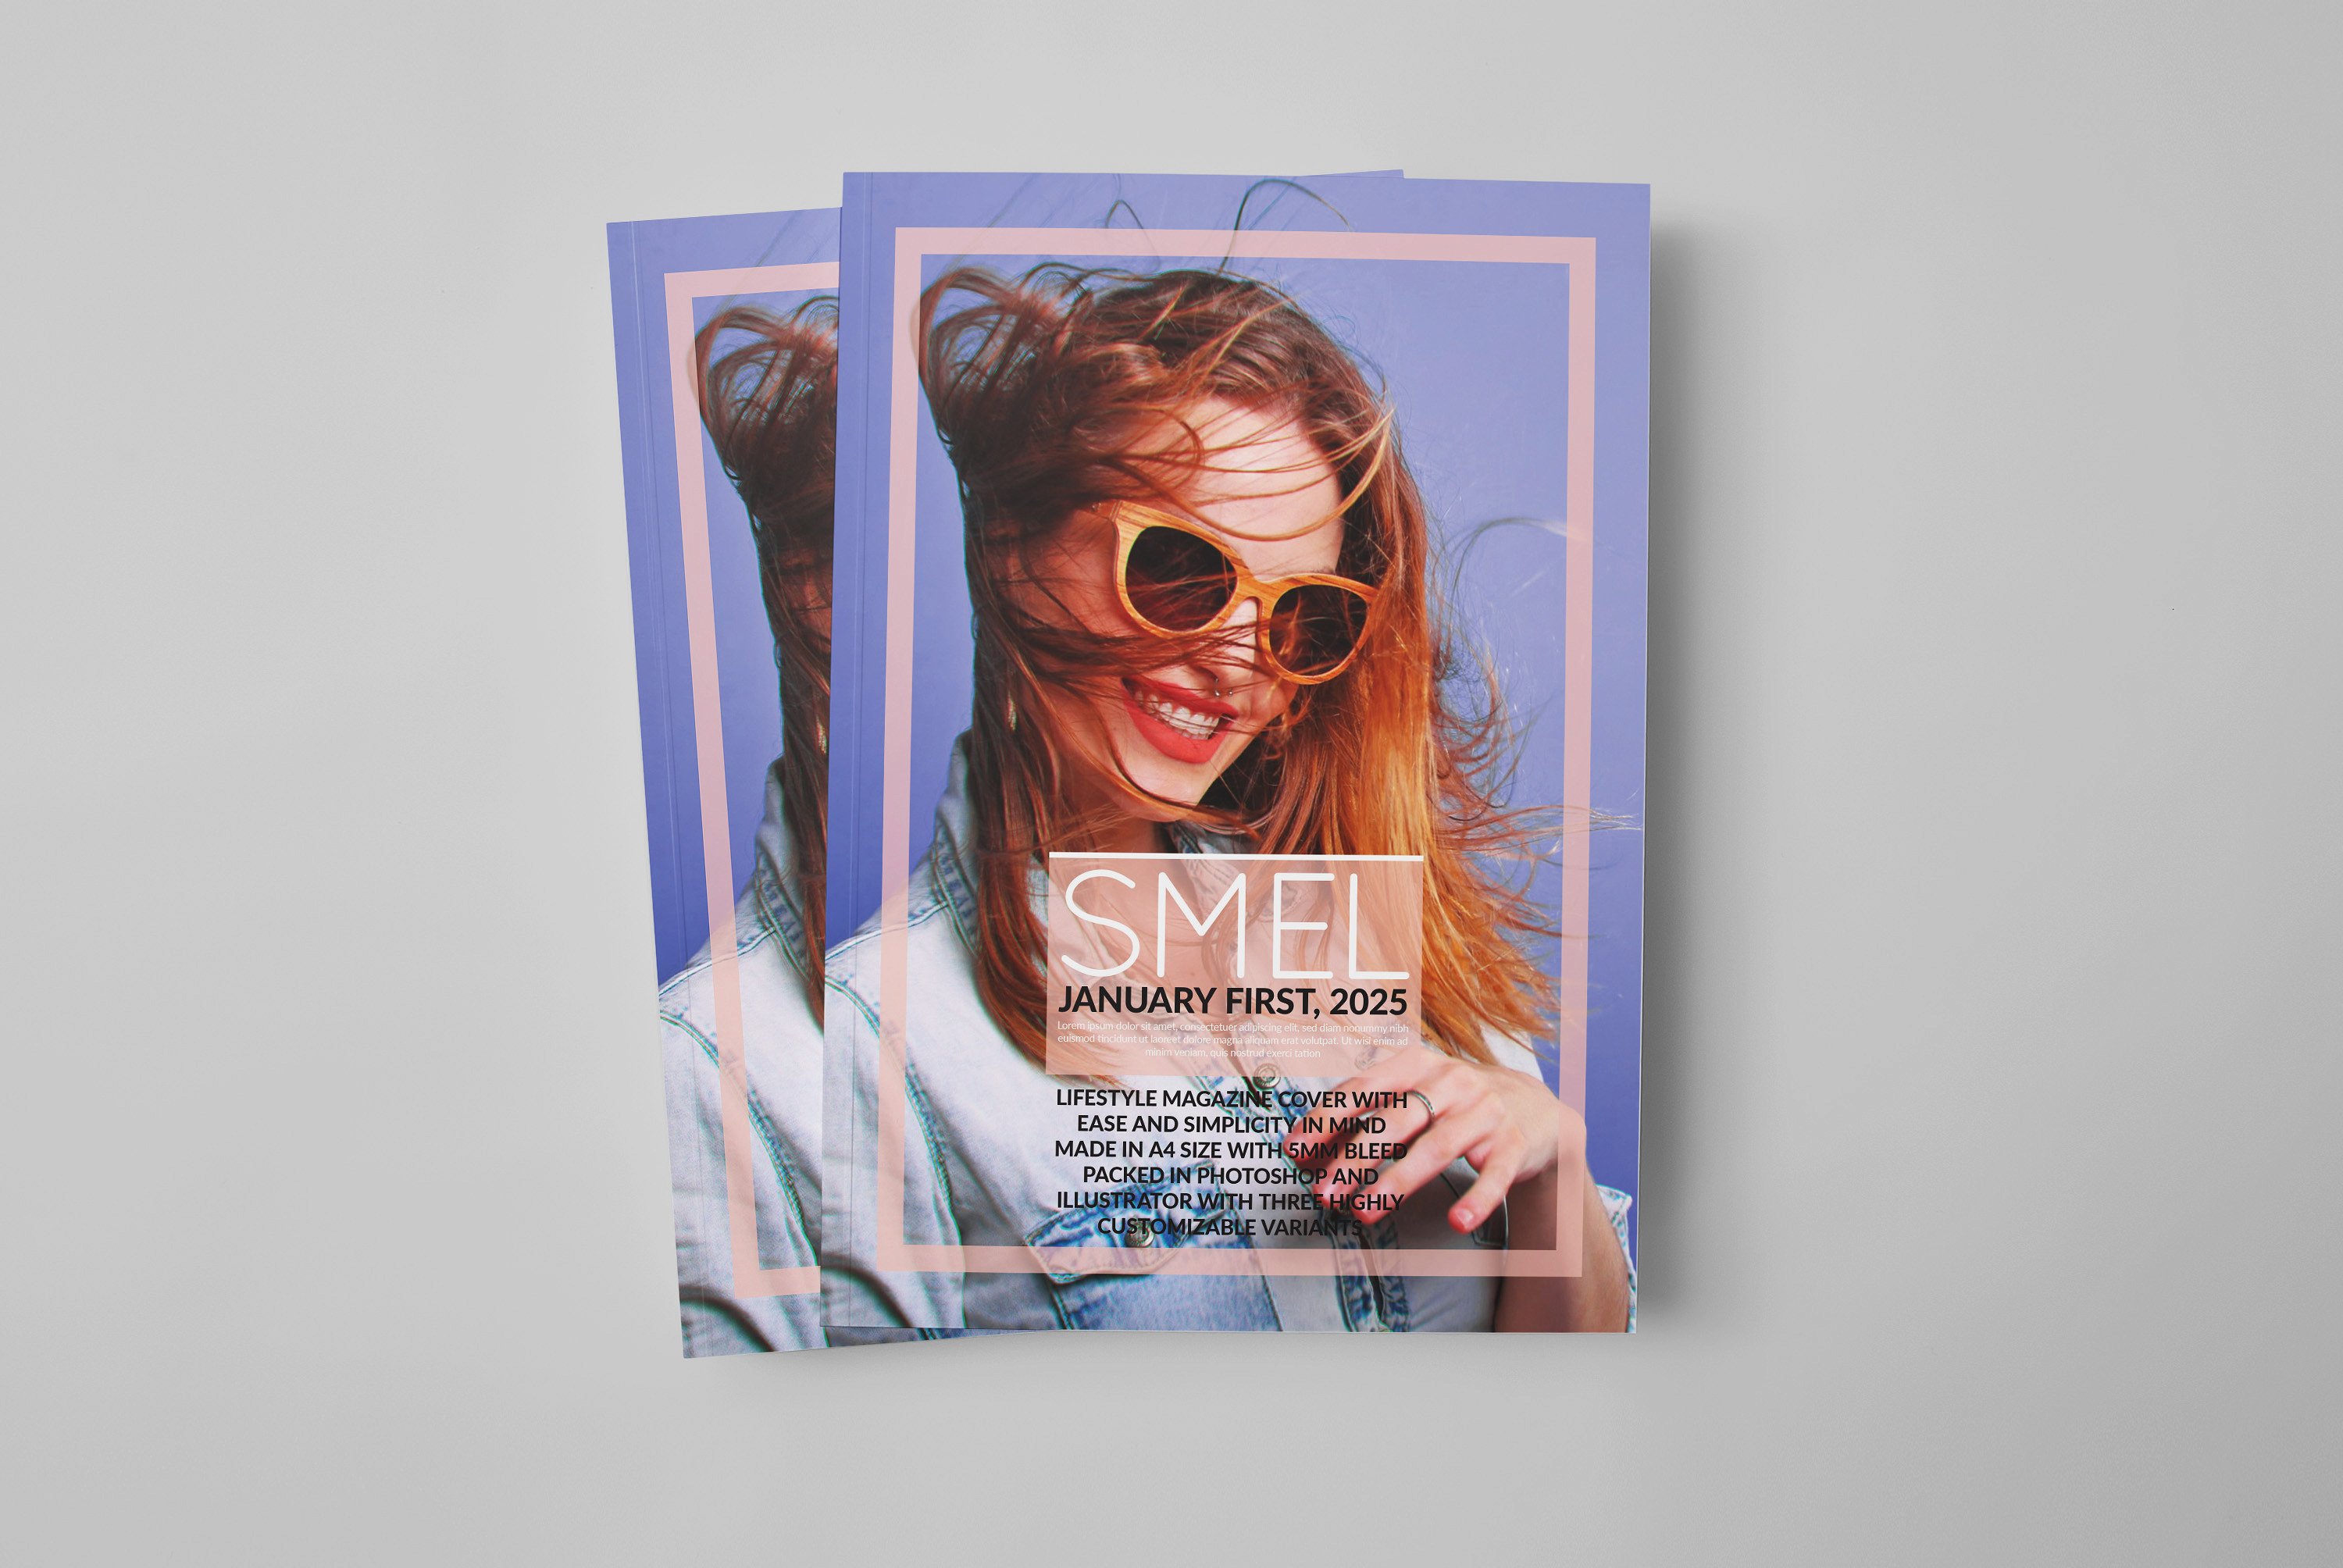 时尚多用途杂志画册手册楼书封面设计模板 Smel - Mag